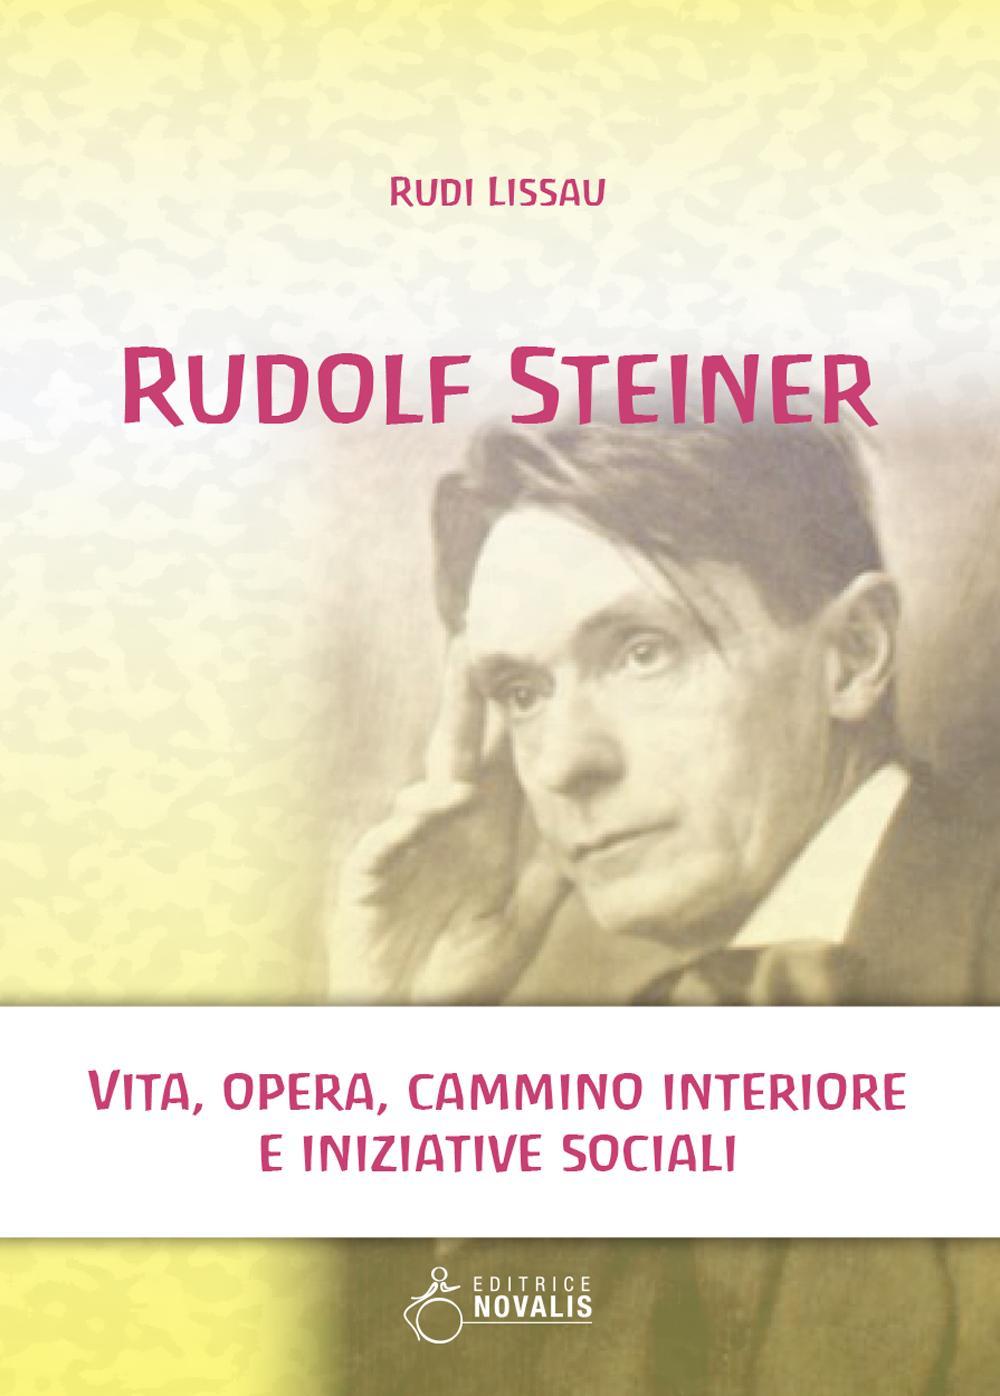 Kniha Rudolf Steiner. Vita, opera, cammino interiore e iniziative sociali Rudi Lissau